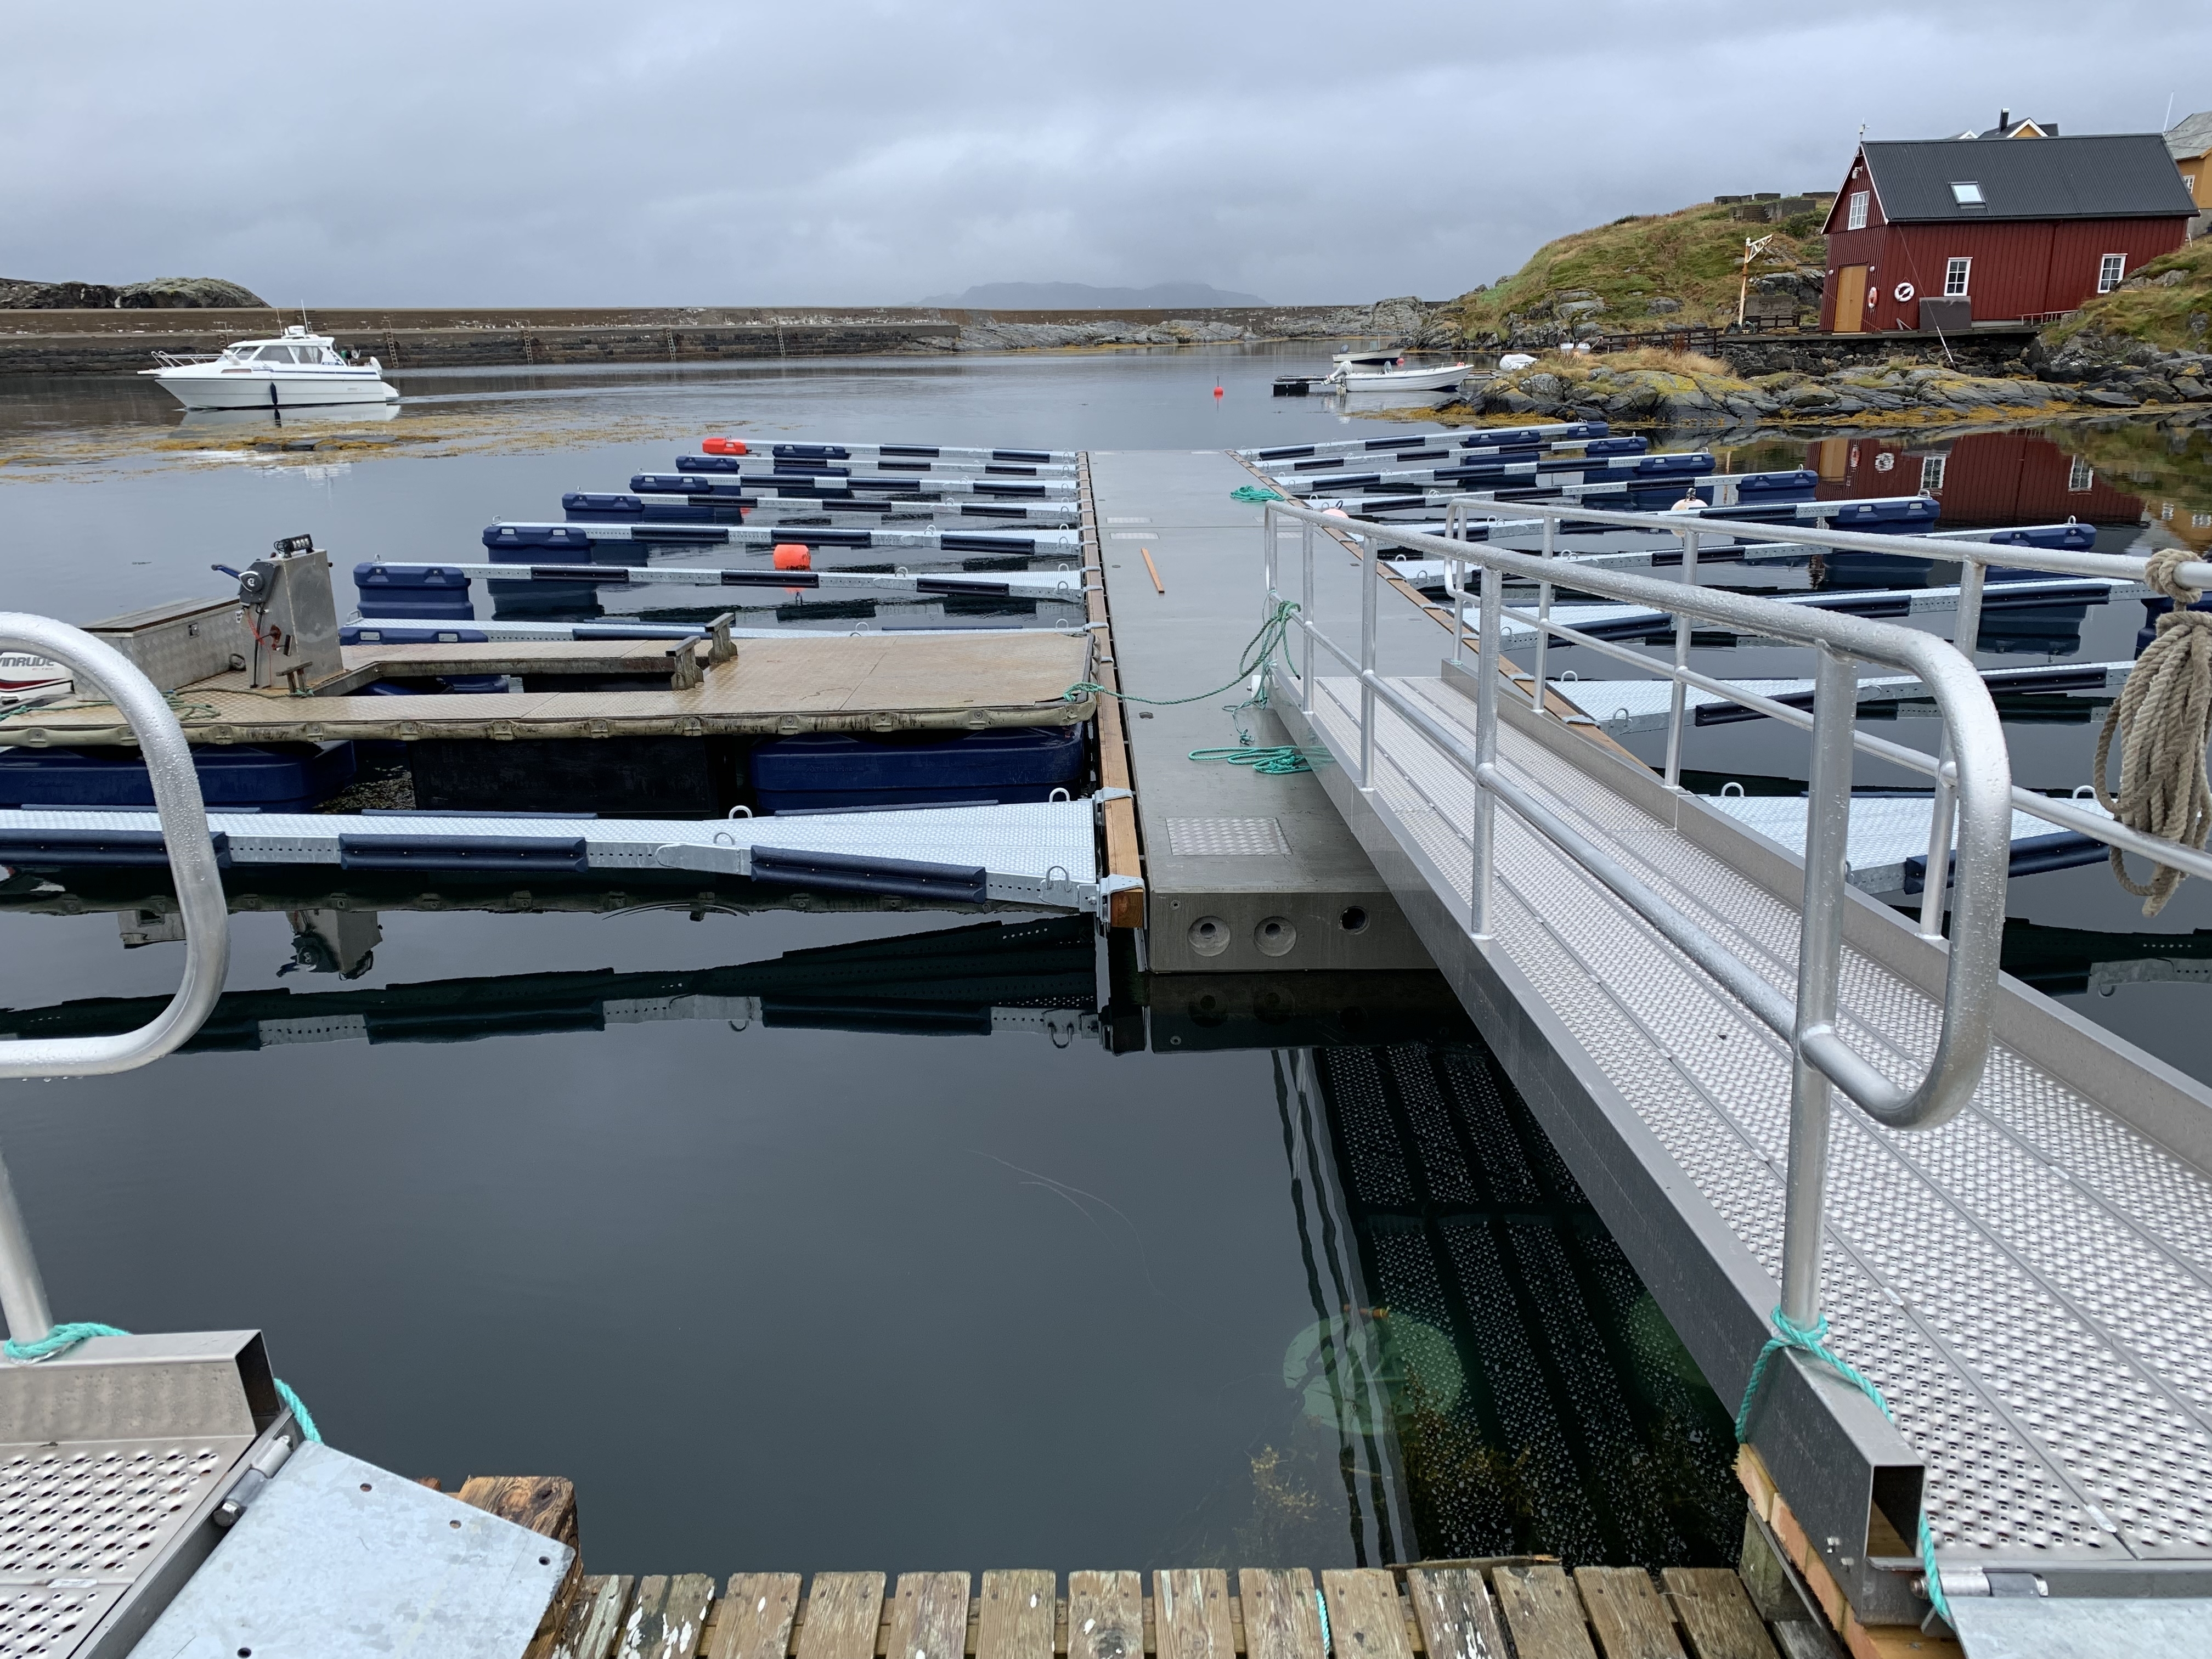 https://marinasolutions.no/uploads/Hamnaberget-småbåtforening-nordre-bjørnsund-marina-solutions-betongbrygger-sklisikre-utriggere-3.jpg